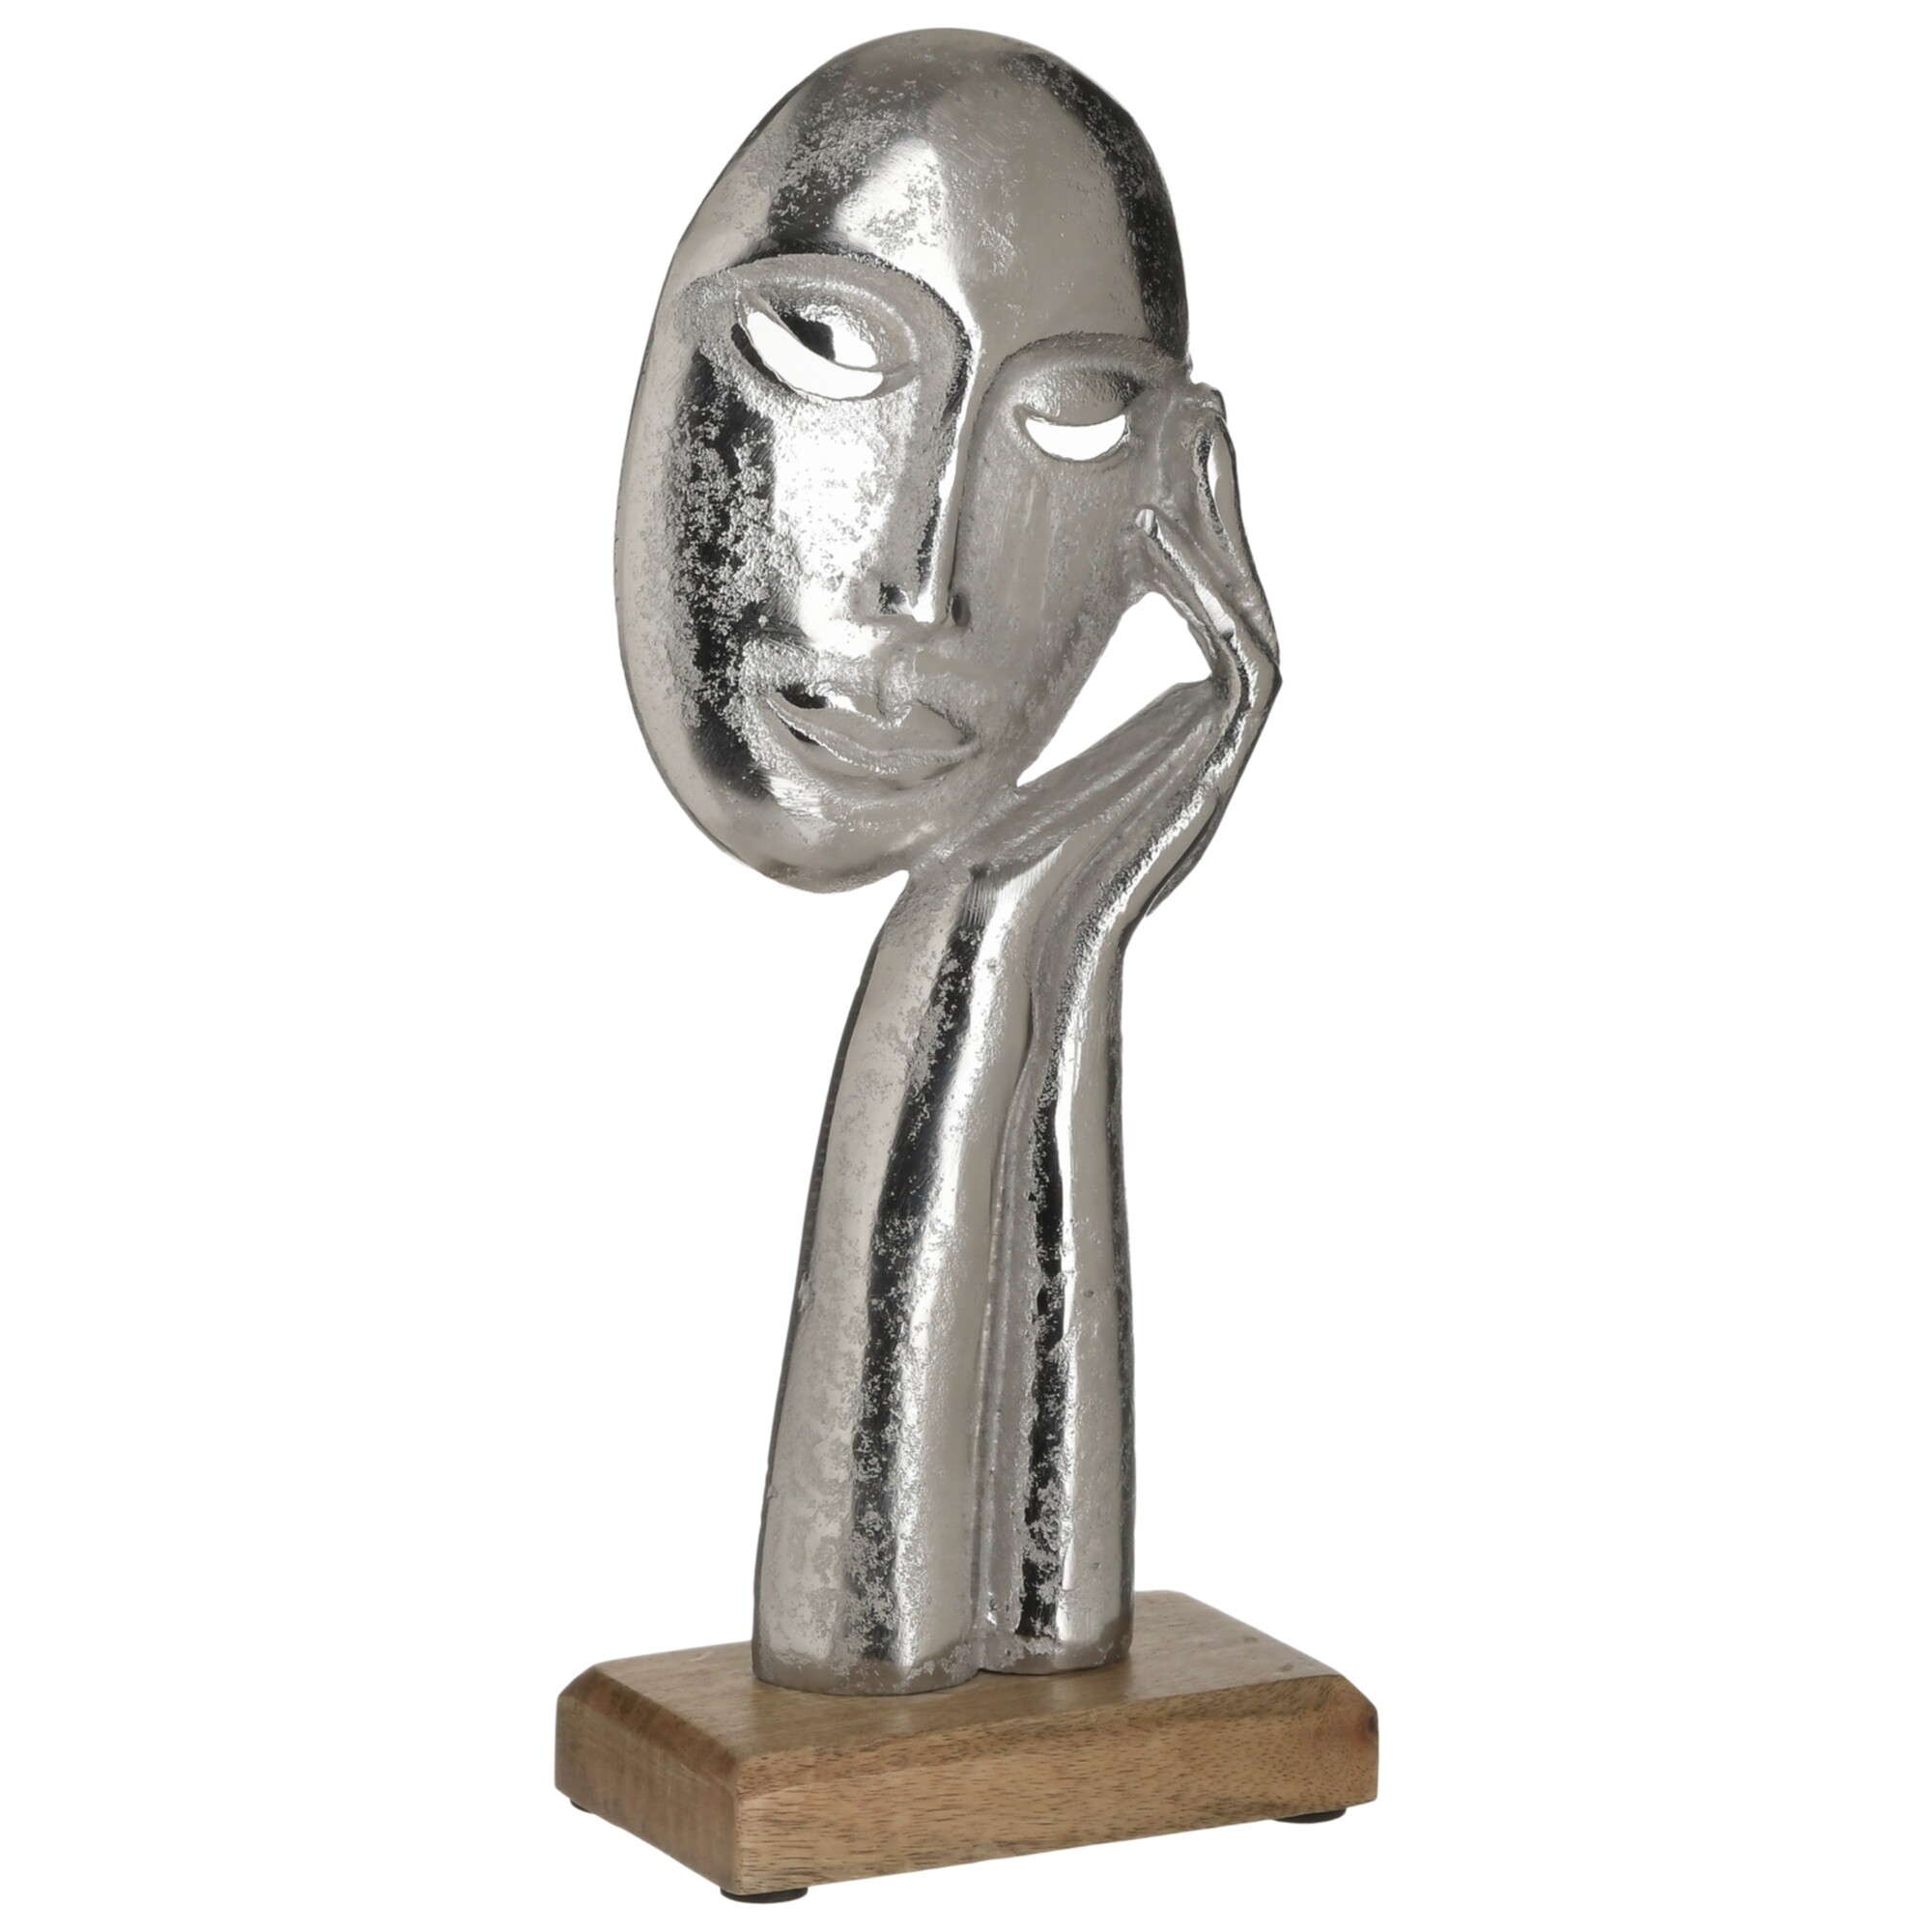 Статуэтка алюминиевая на деревянной подставке 32х13 см серебристая, бежевая Face